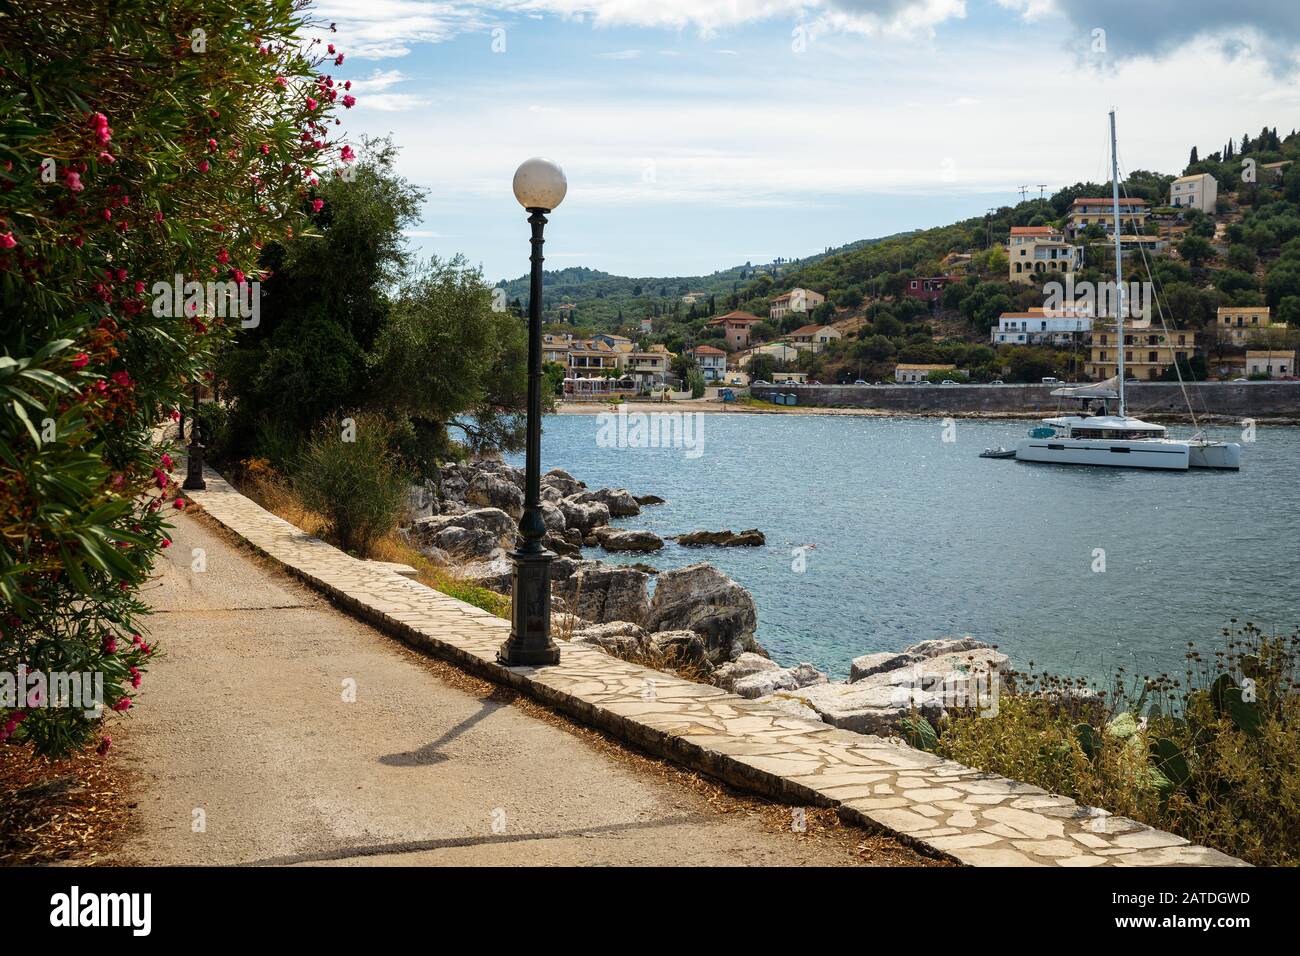 Small town on the Greek island of Corfu in the Ionian Sea Stock Photo